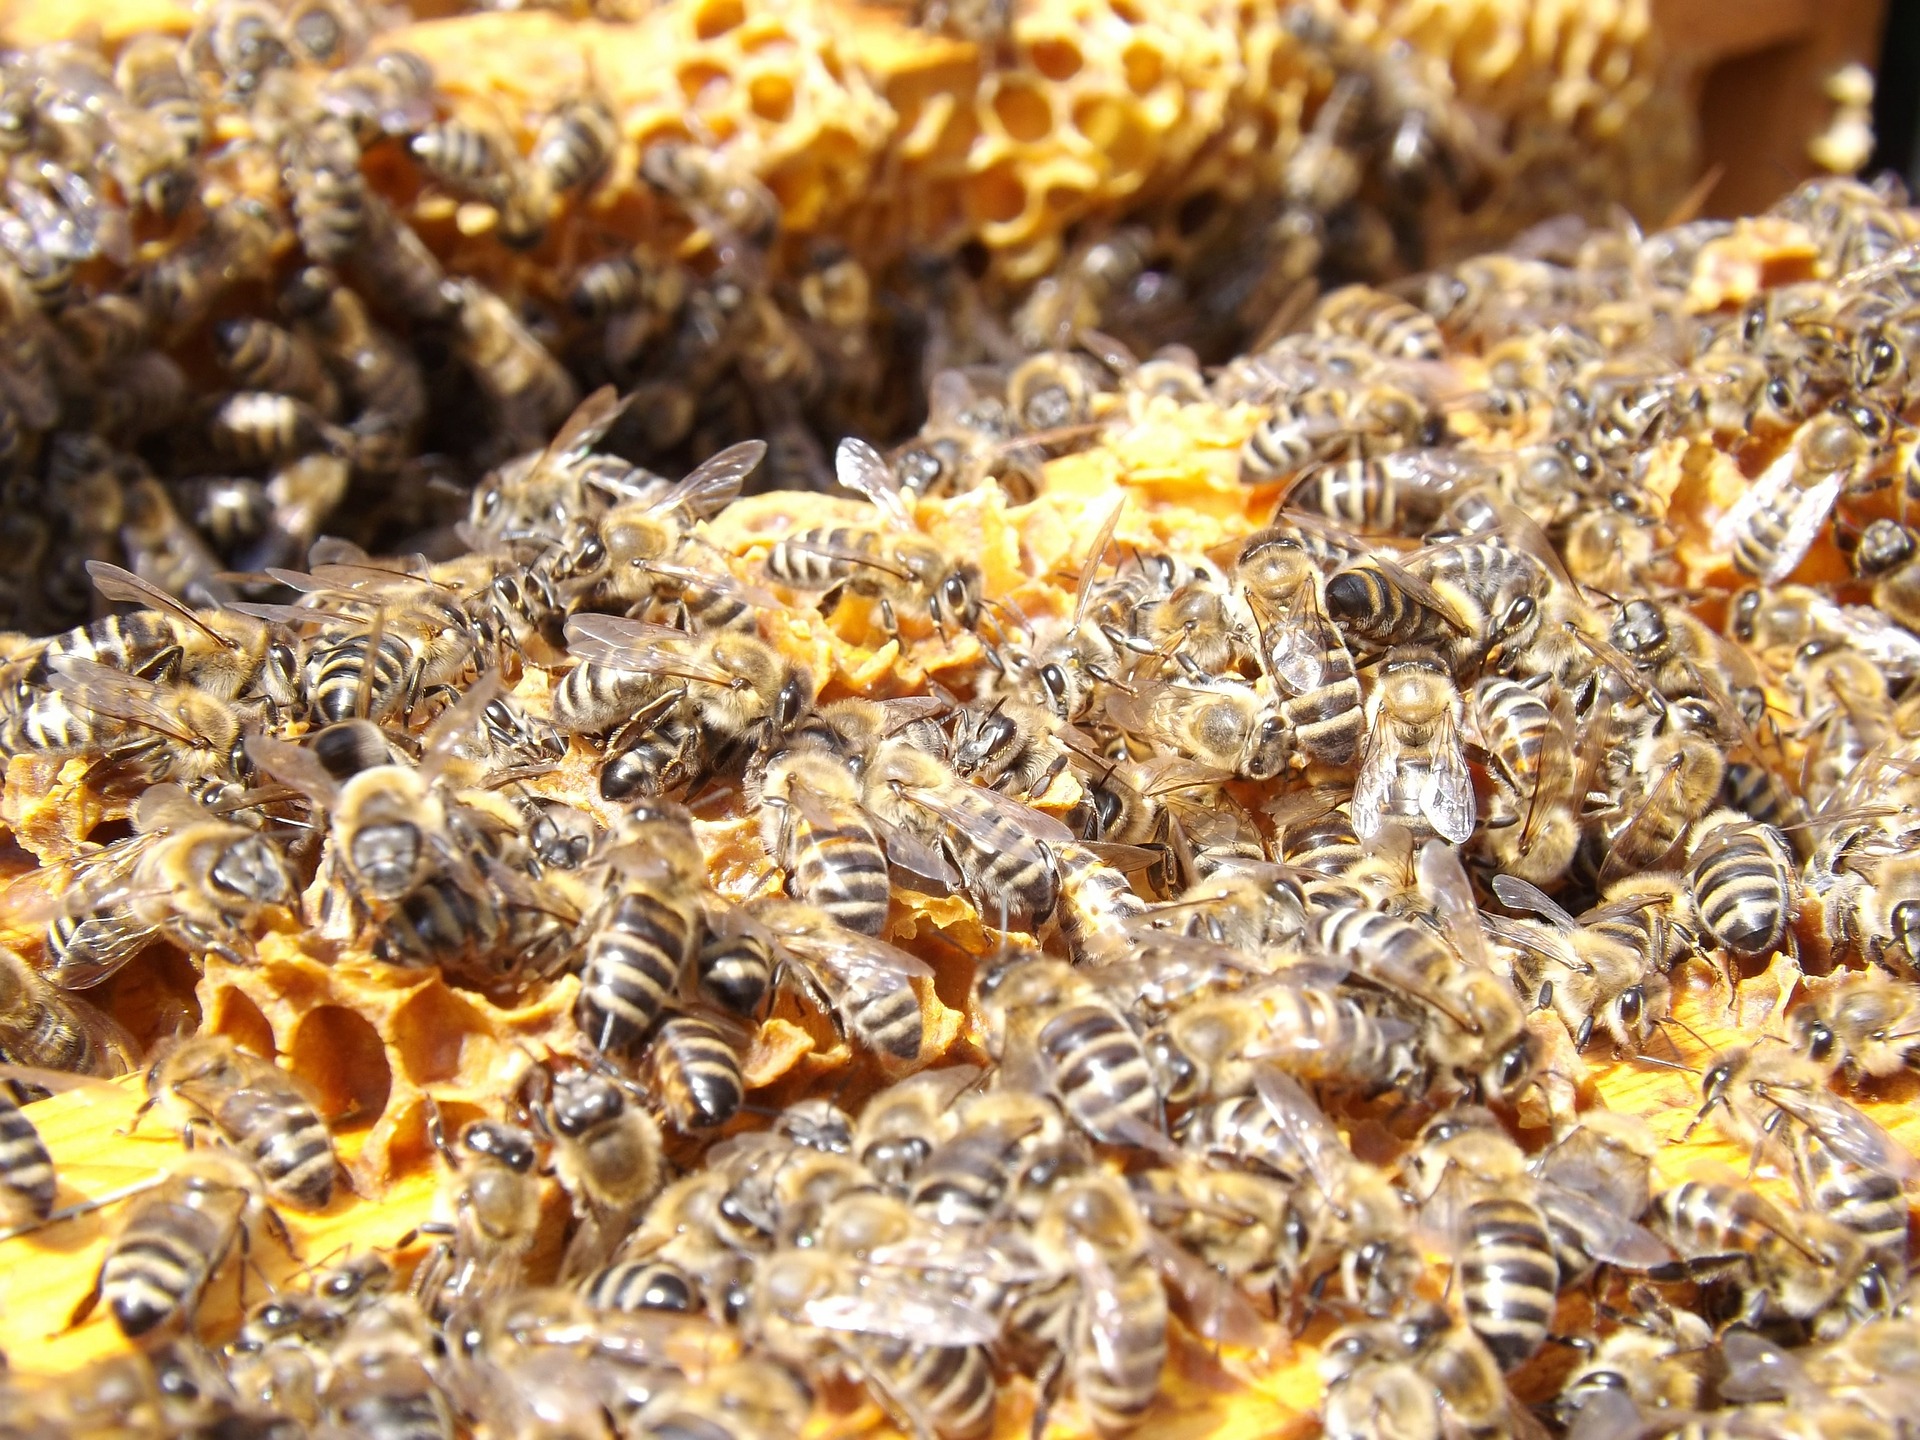 Das Bienensterben hat auch für den Menschen verheerende Auswirkungen. Quelle: pixabay.de